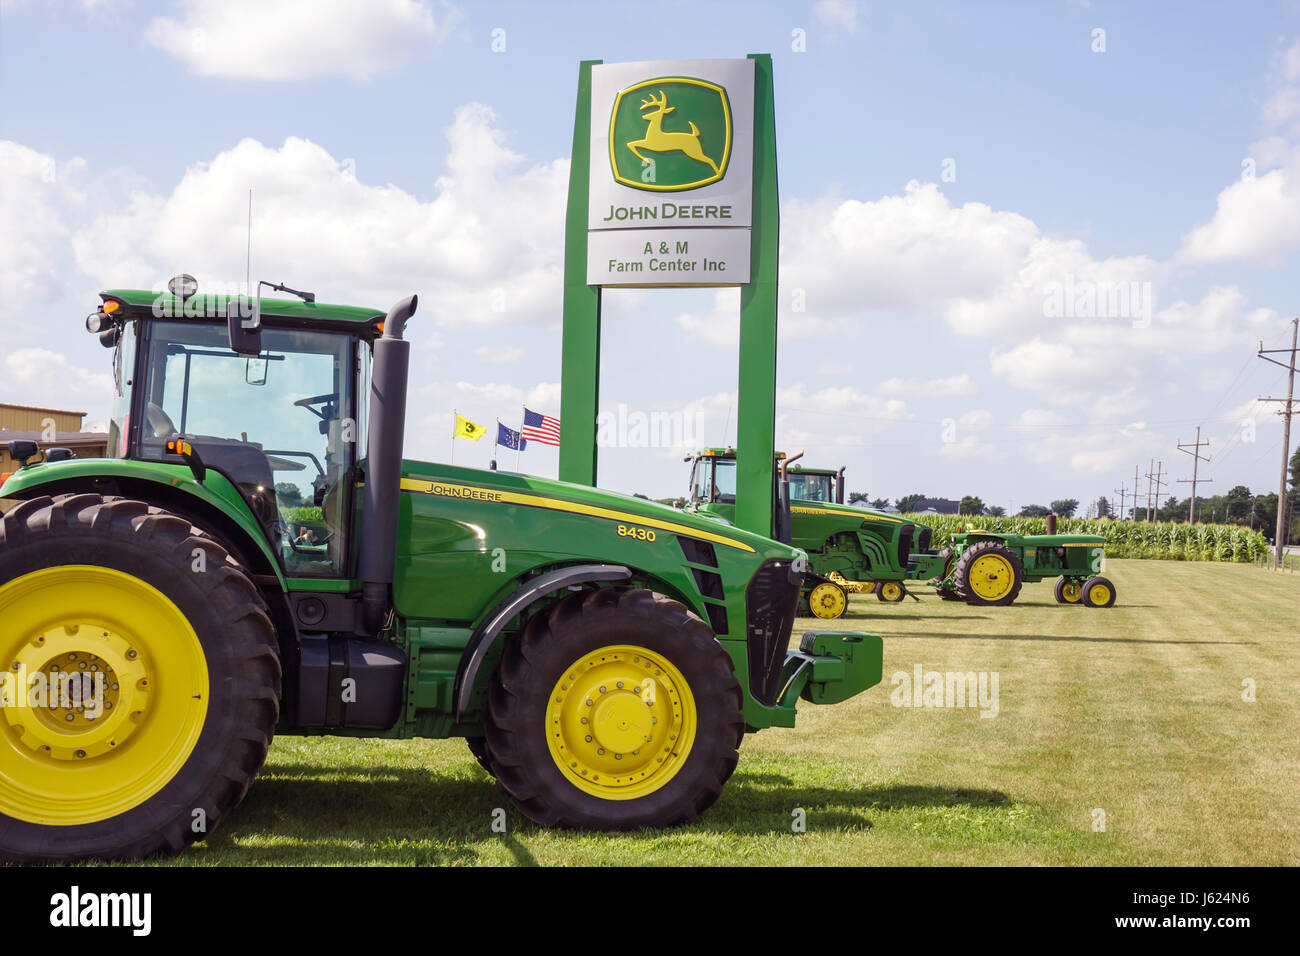 Indiana Kouts, John Deere, Traktor, grün, gelb, globales Unternehmen, Logo, Schild, Händlerbetrieb, Verkauf, landwirtschaftliche Ausrüstung, Agrotourismus, IN080720043 Stockfoto